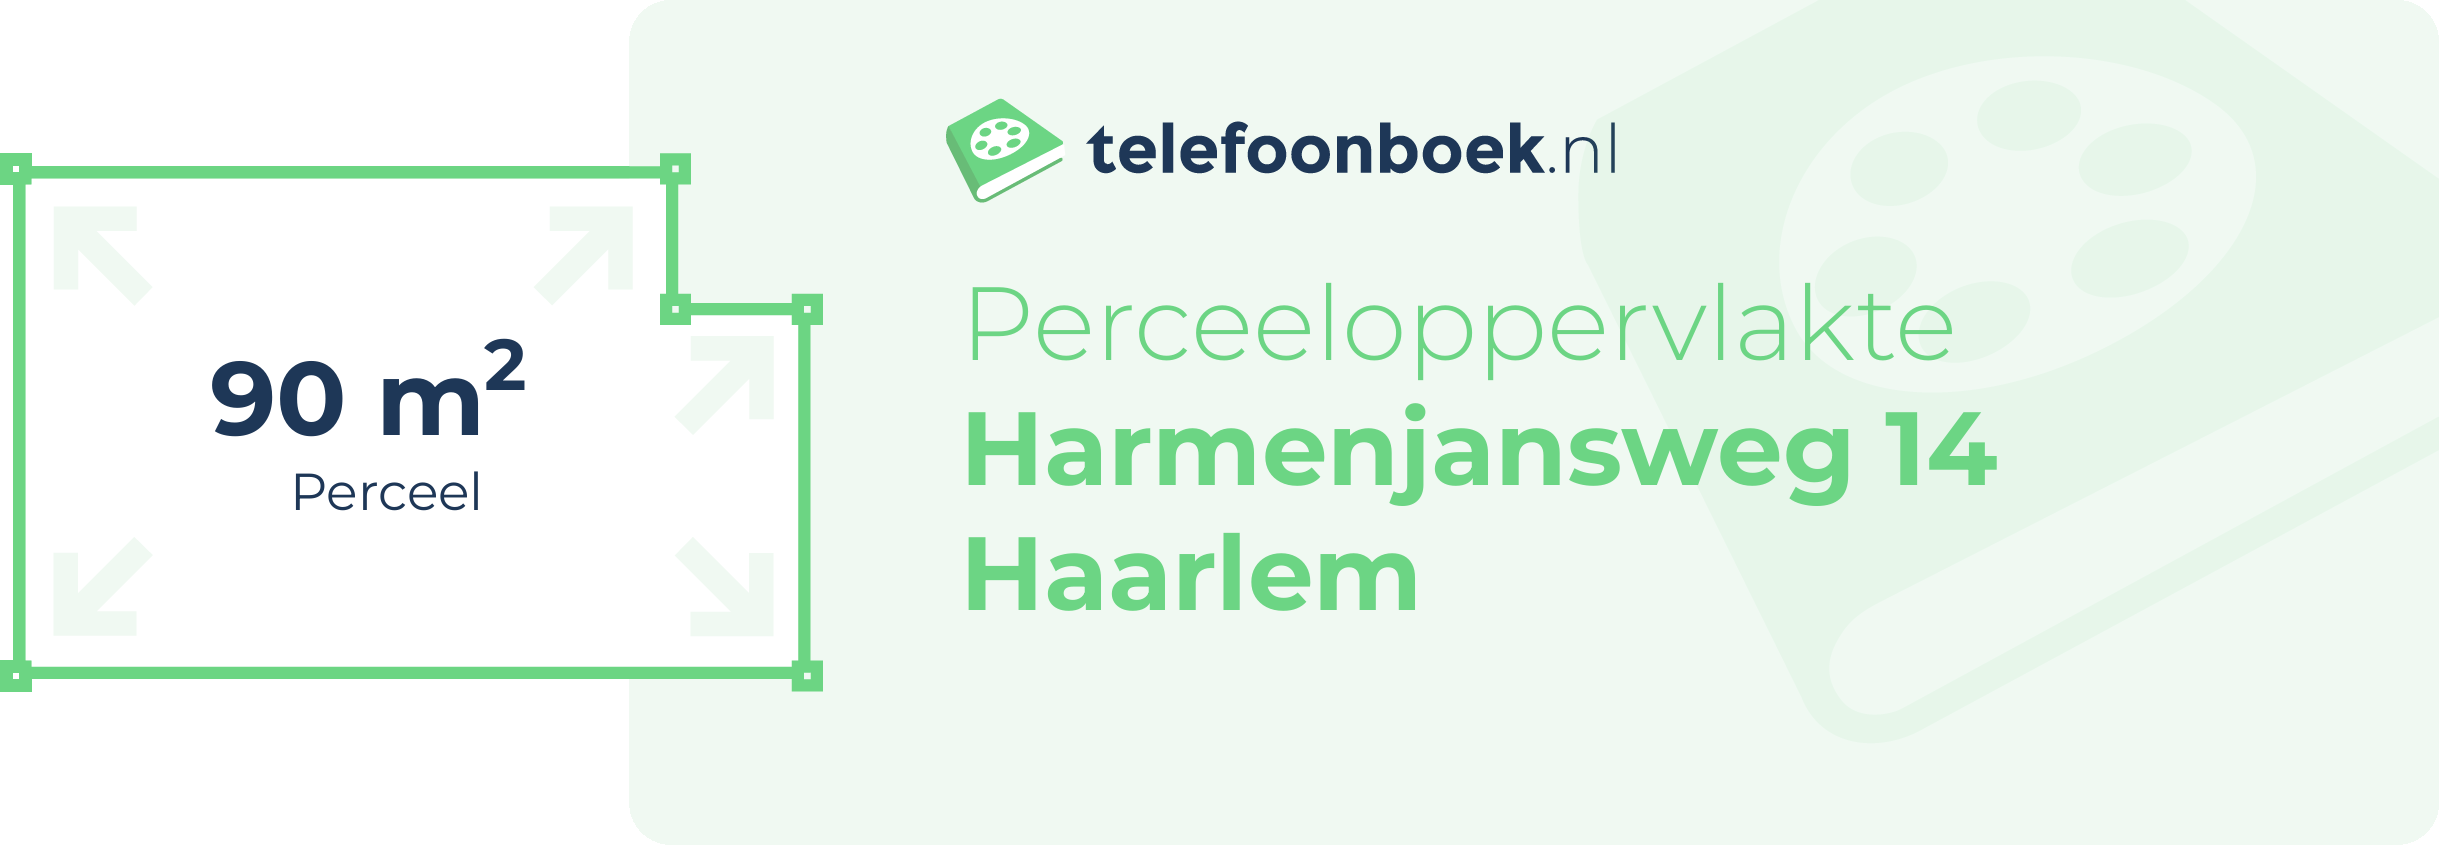 Perceeloppervlakte Harmenjansweg 14 Haarlem